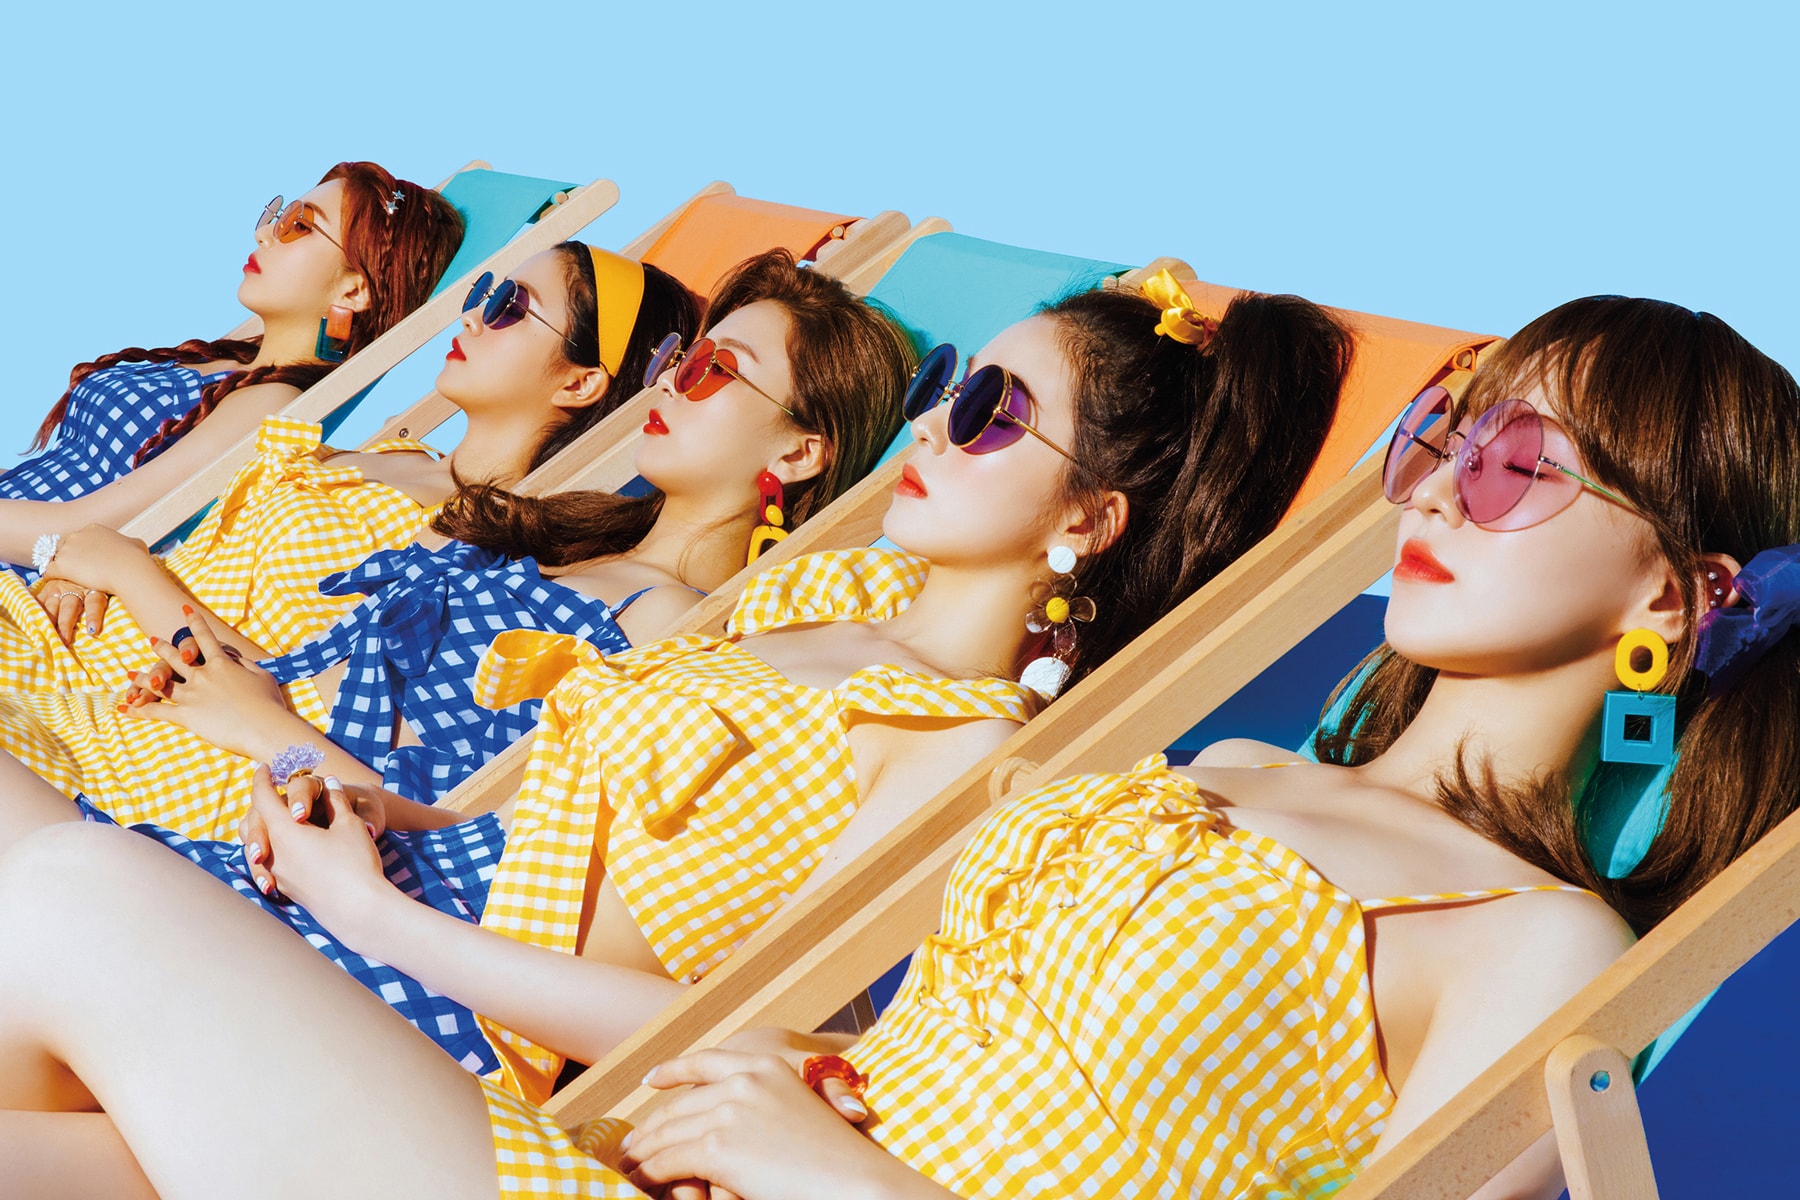 Red Velvet Summer Magic EP Album Cover Art